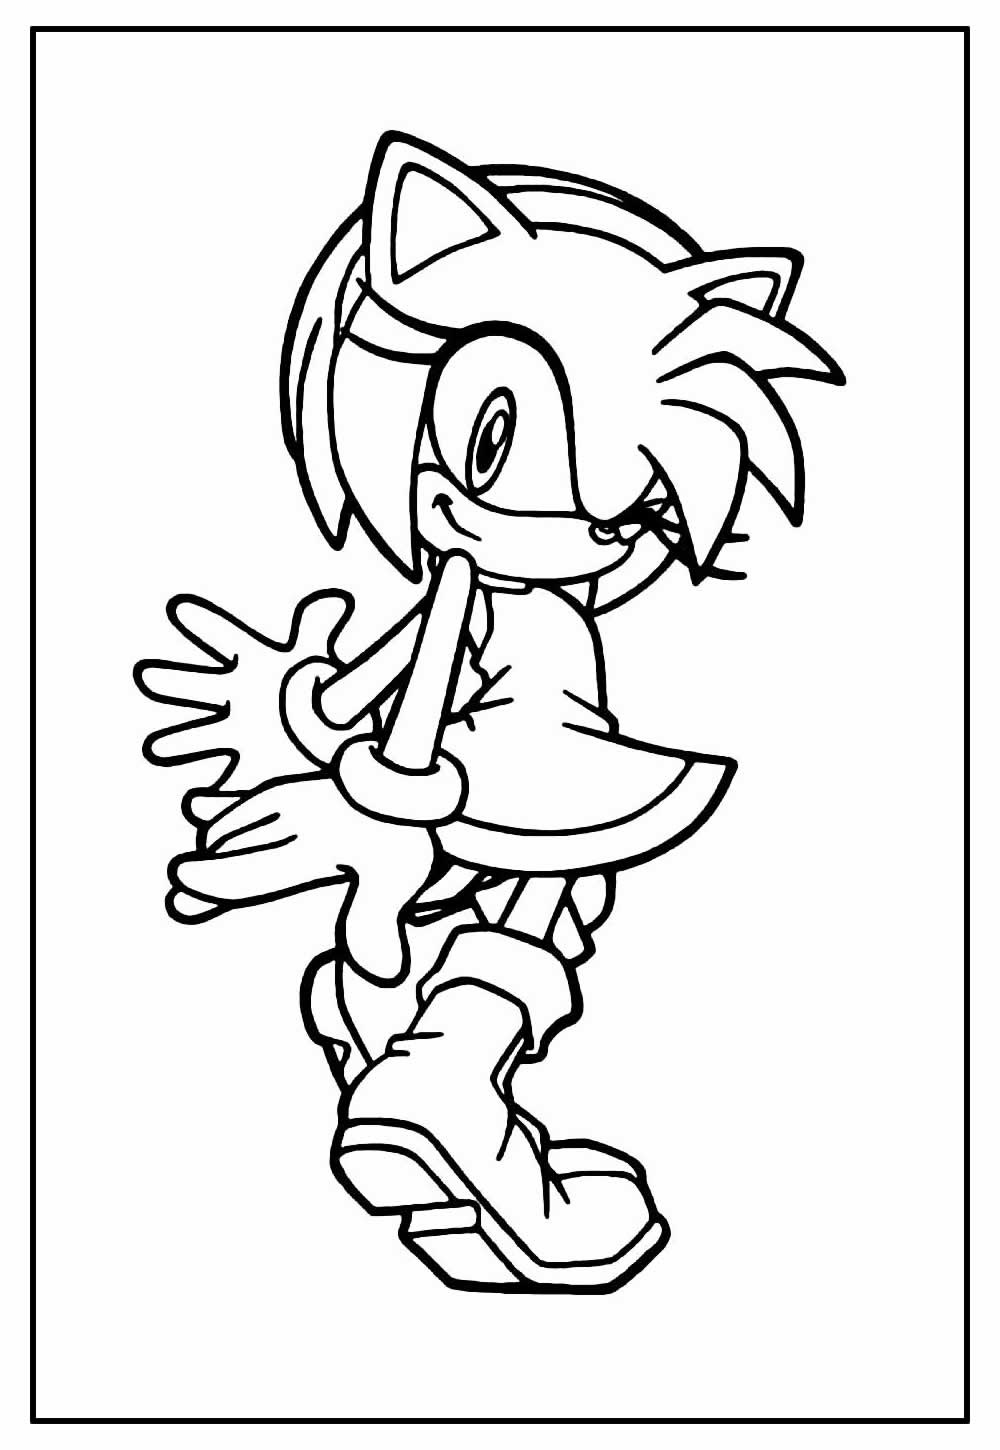 Desenhos do Sonic para imprimir colorir e pintar - Desenhos para pintar e  colorir